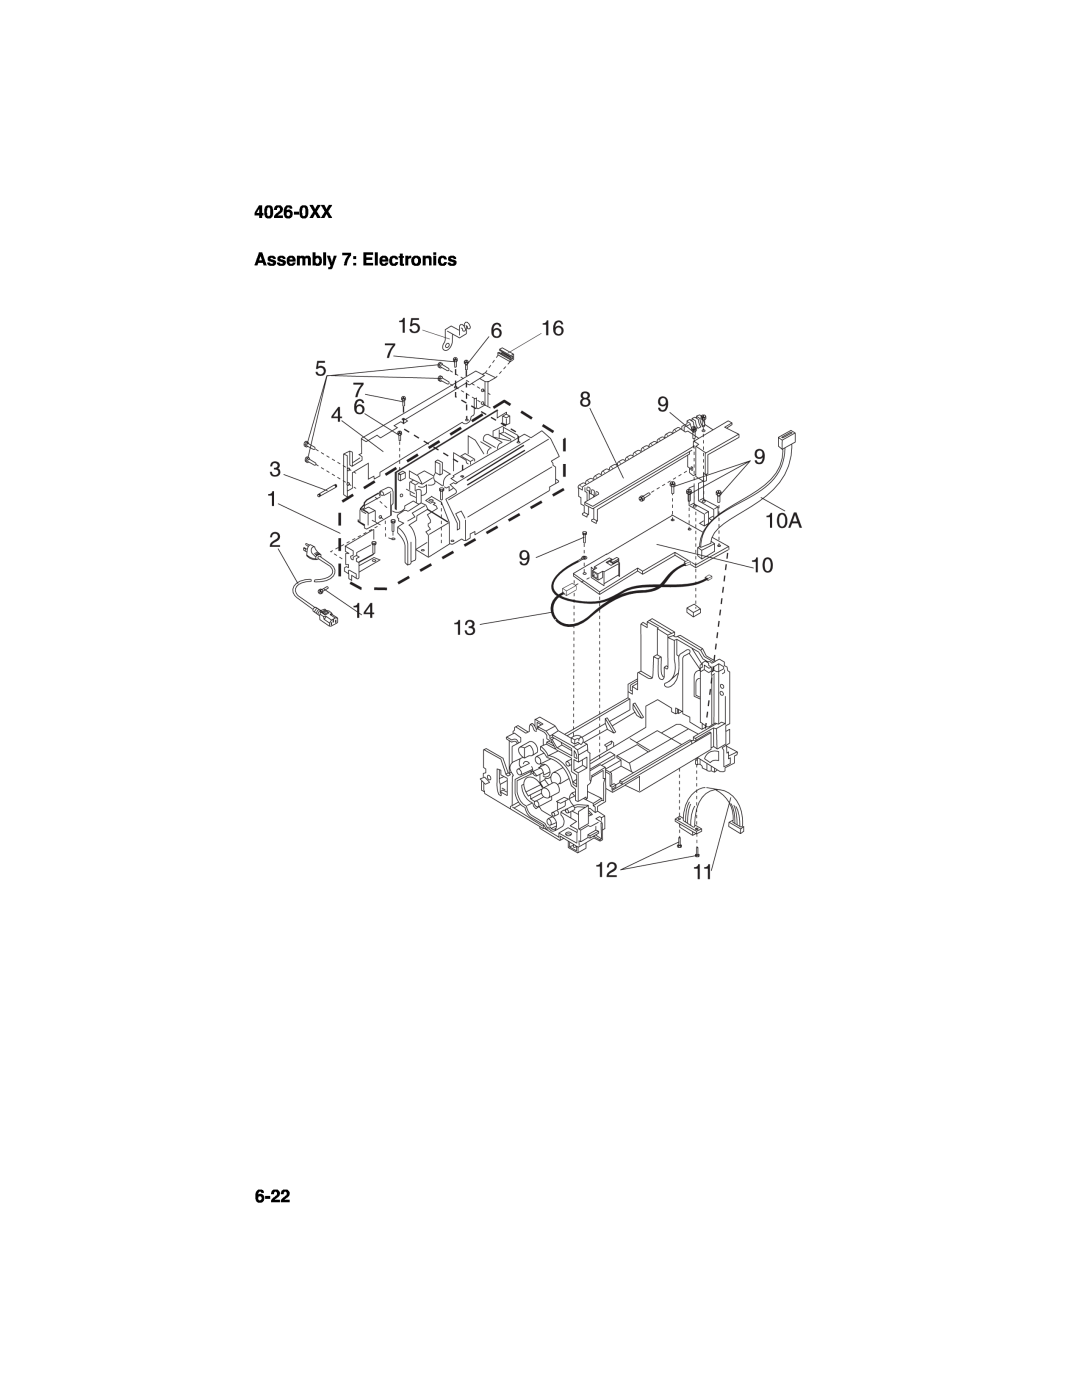 Lexmark manual 4026-0XX Assembly 7: Electronics, 6-22 